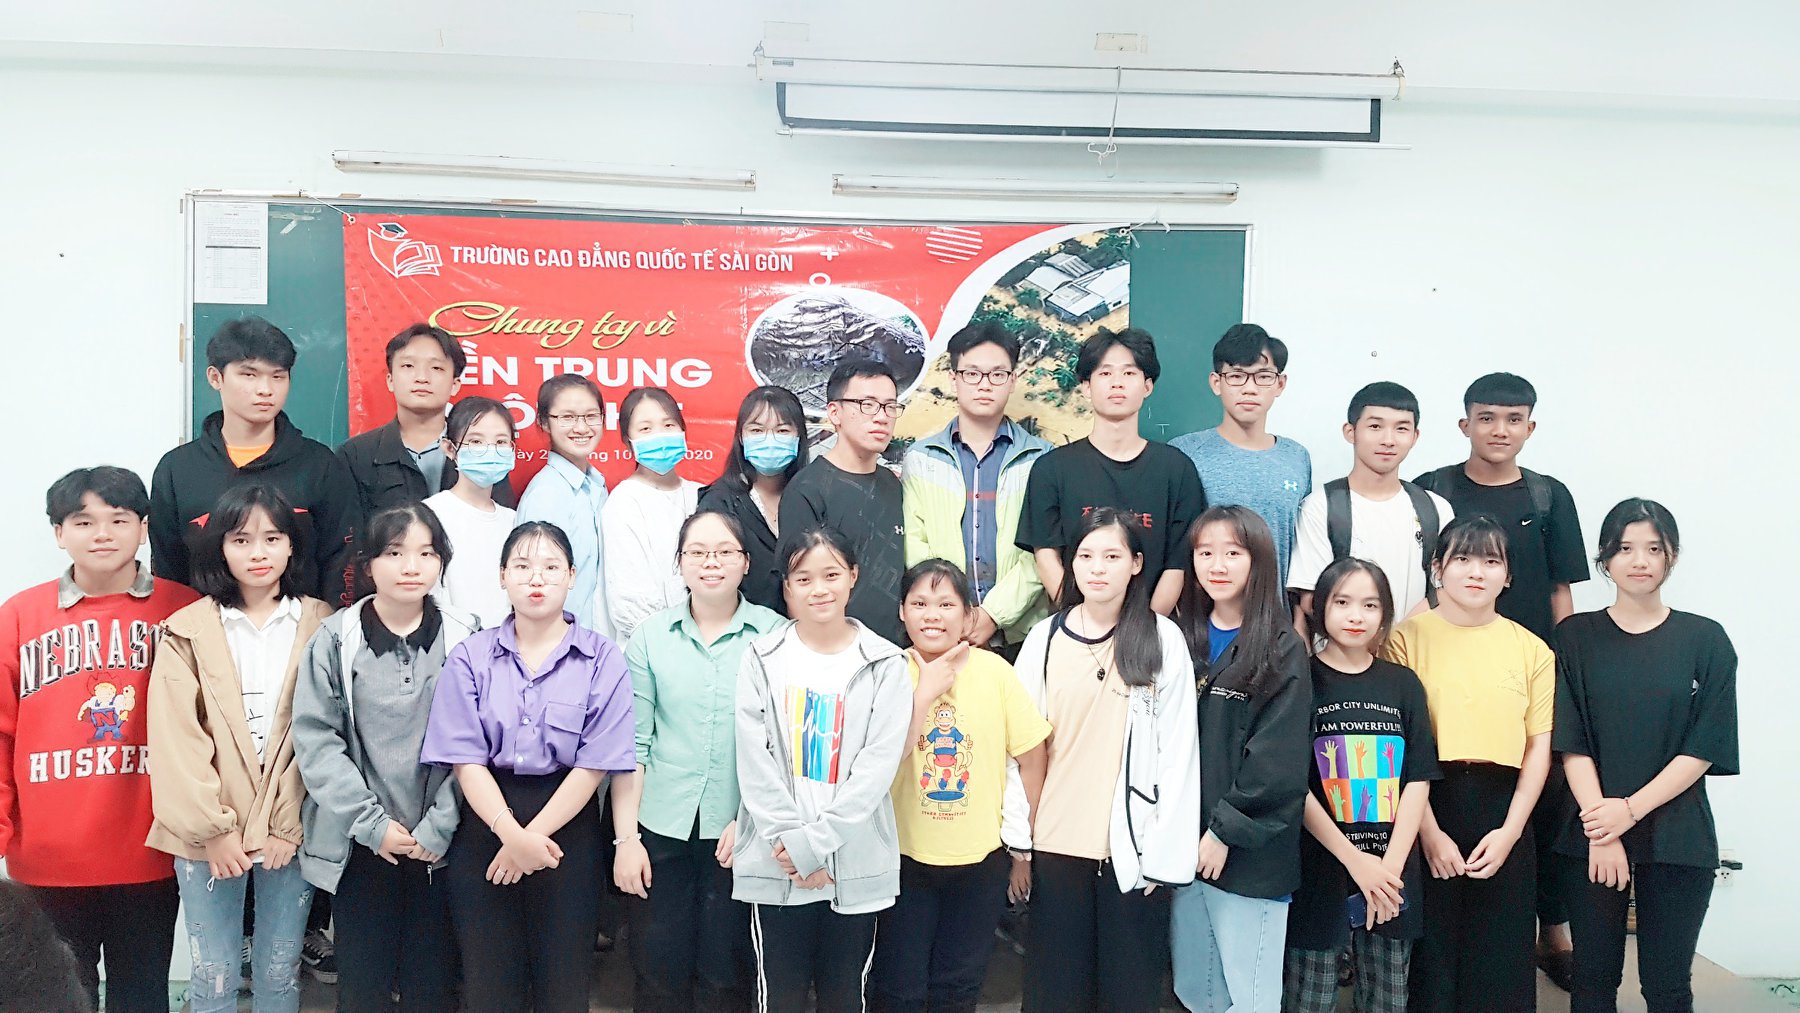 sinh viên trường Cao đẳng Quốc Tế Sài Gòn quyên gópủng hộ người dân miền trung khắc phục hậu quả bão lụt